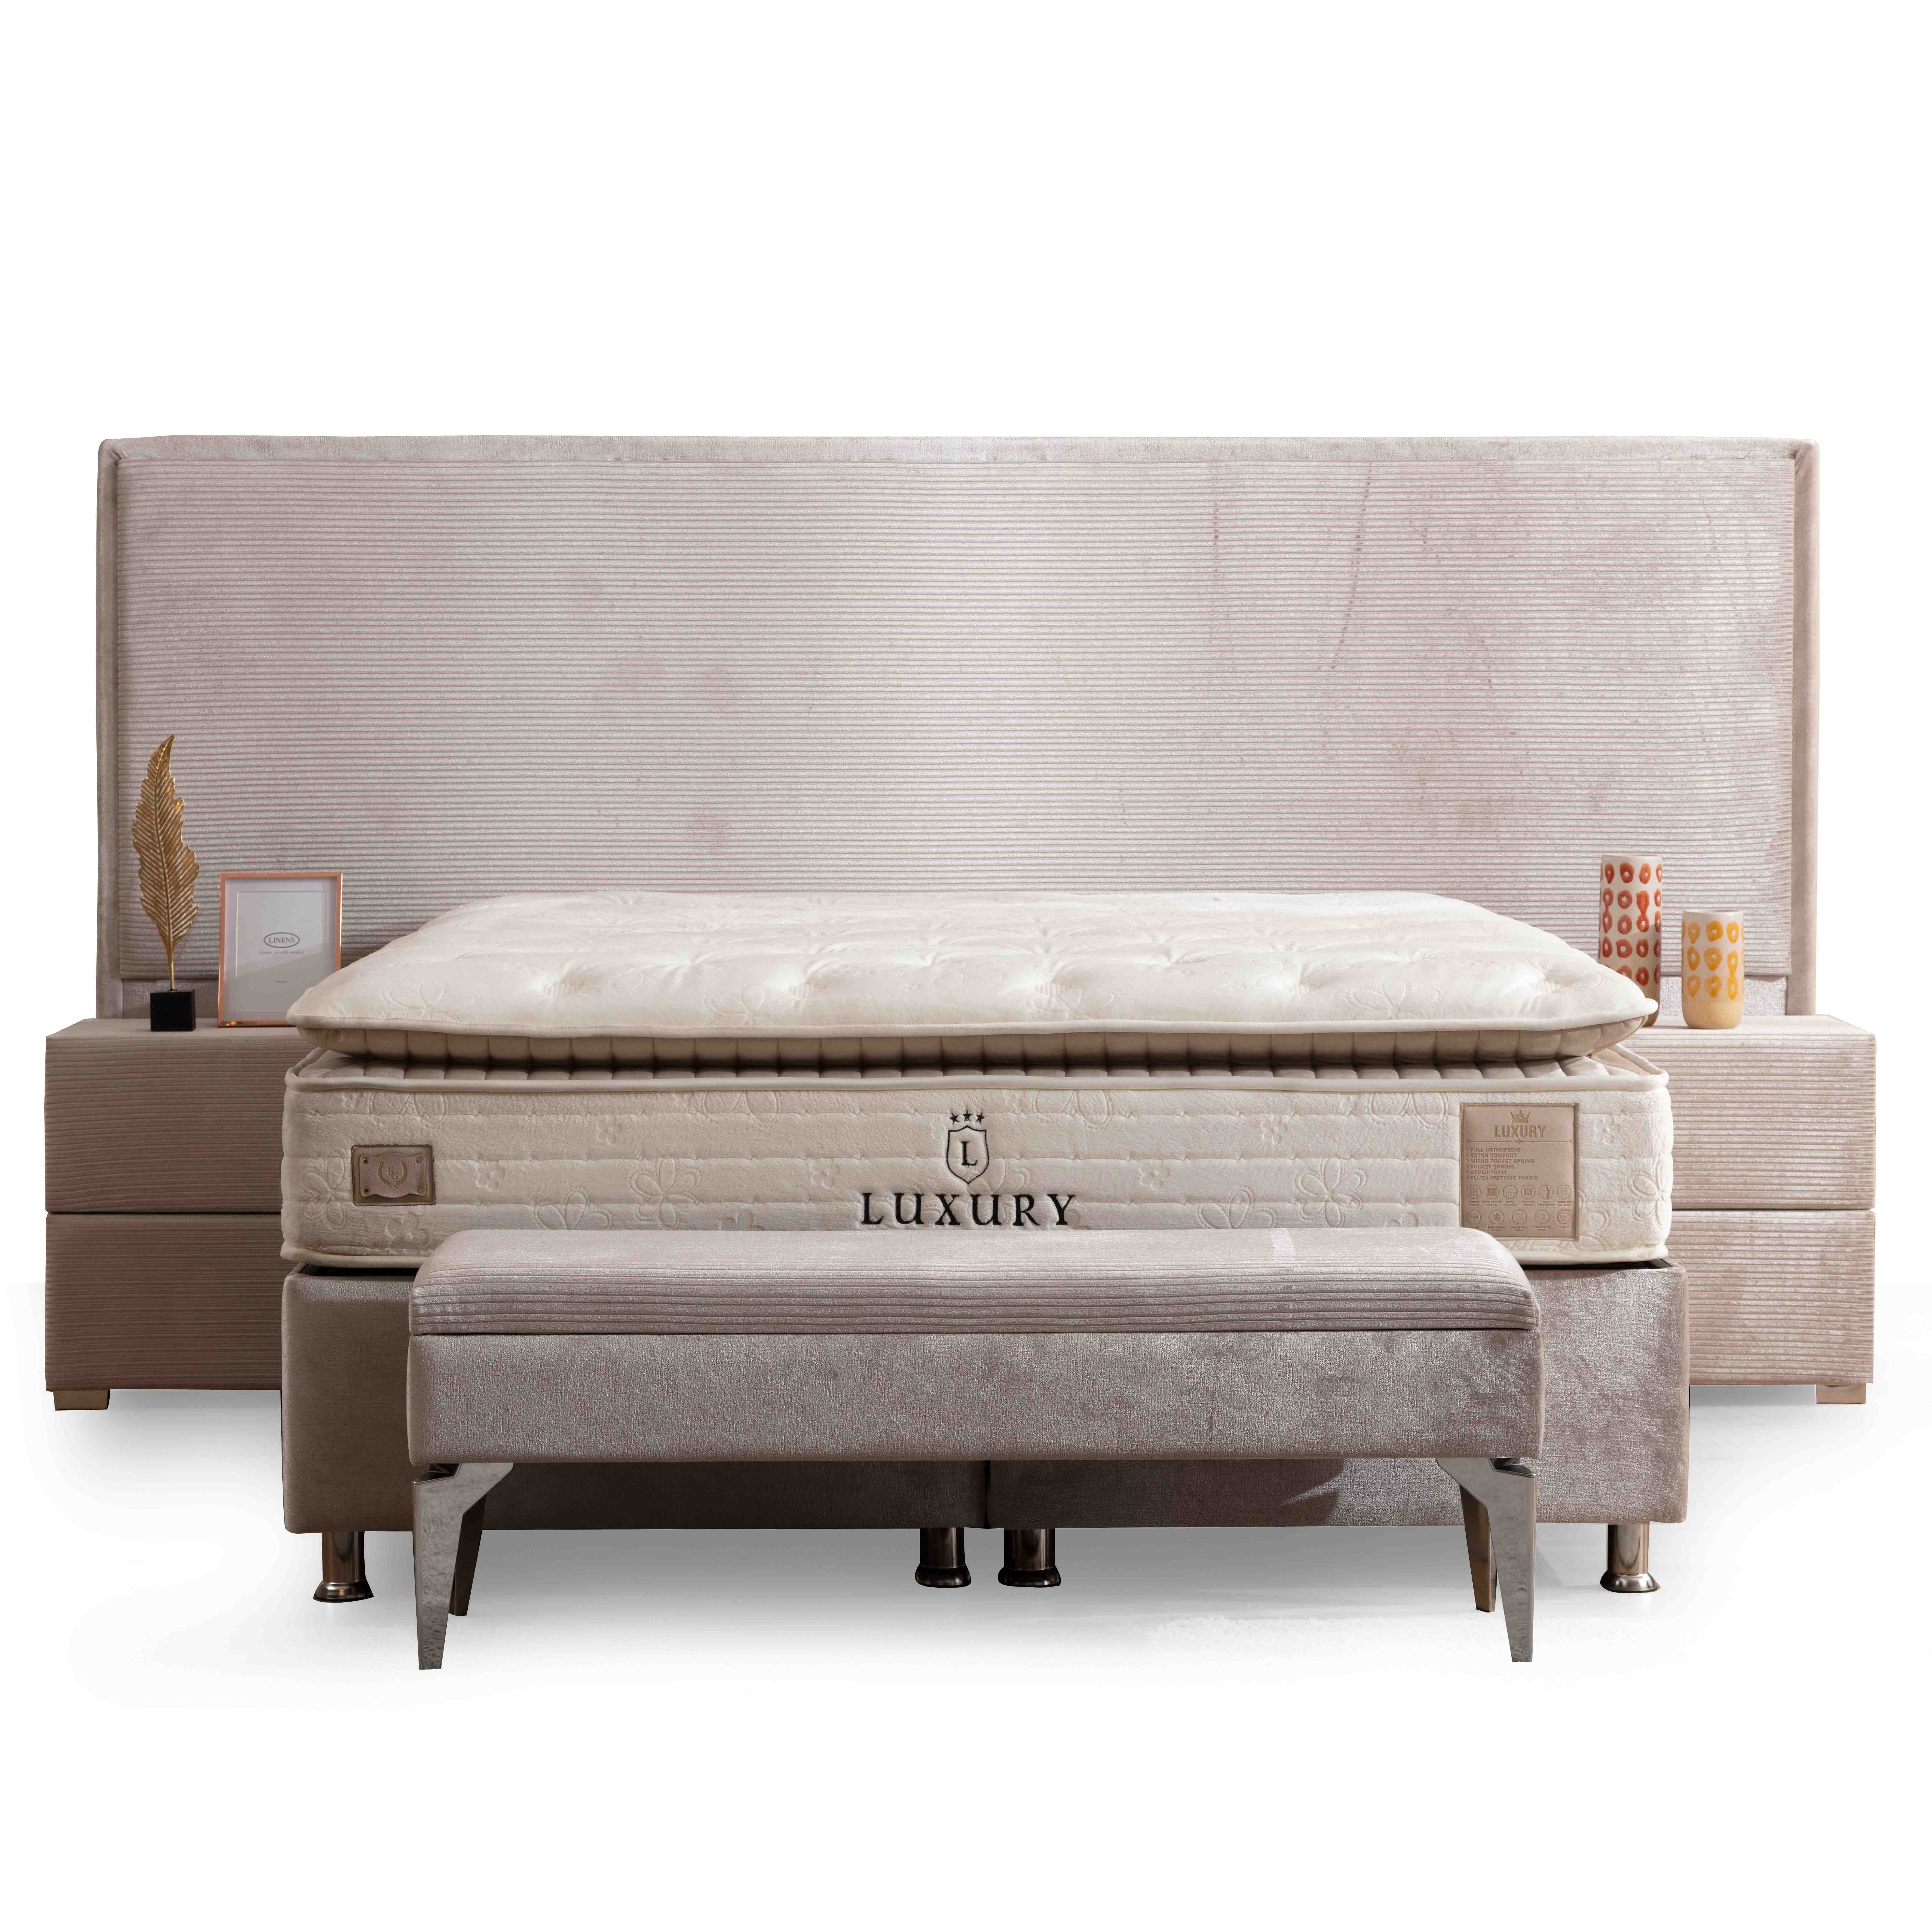 Havana Bed With Storage 90*190